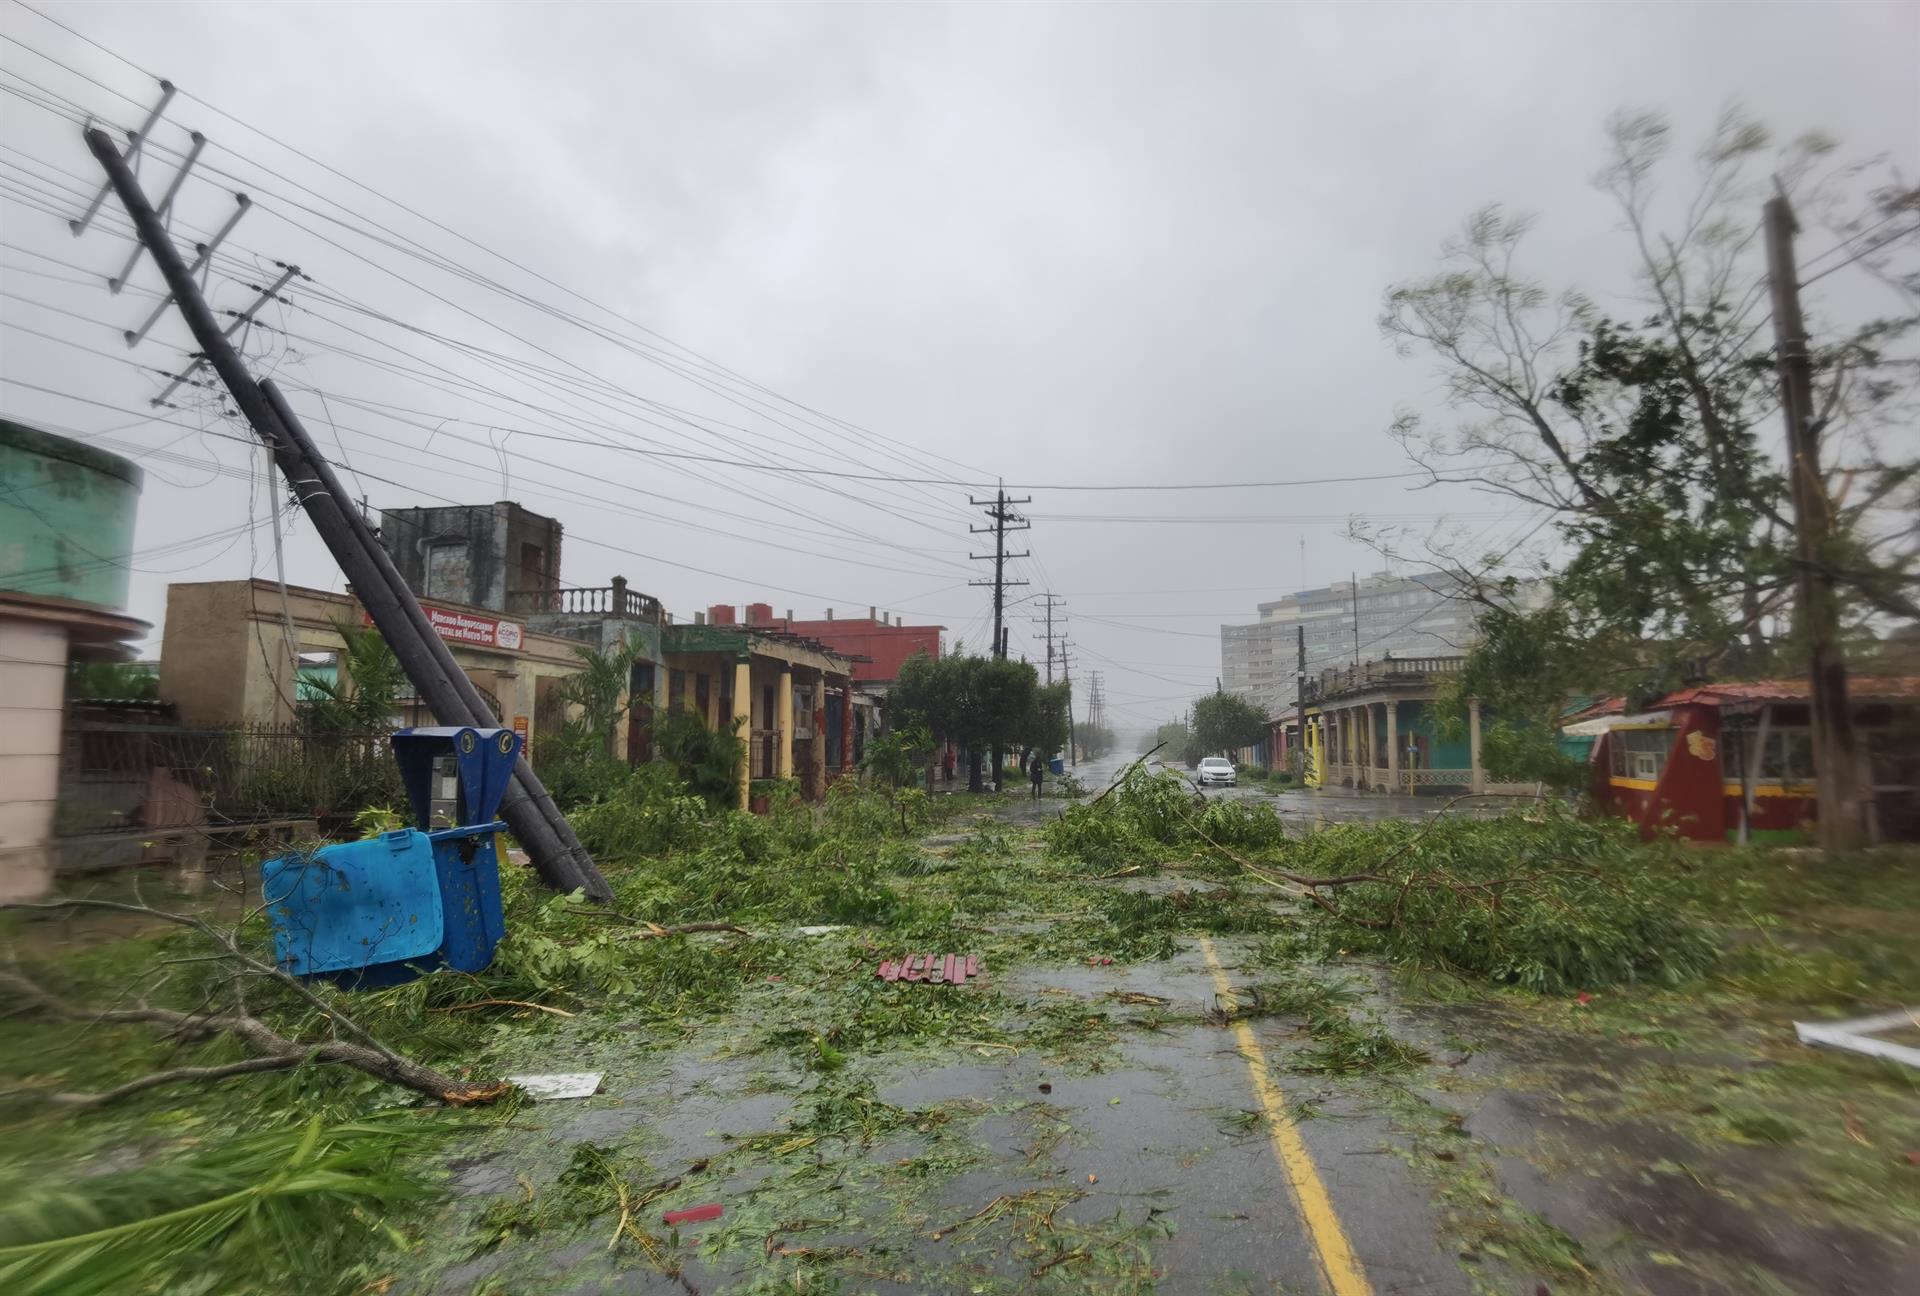 Fotografía de una calle con los destrozos dejados por el paso del huracán Ian, el 27 de septiembre de 2022, en Pinar del Río (Cuba). EFE/Yander Zamora